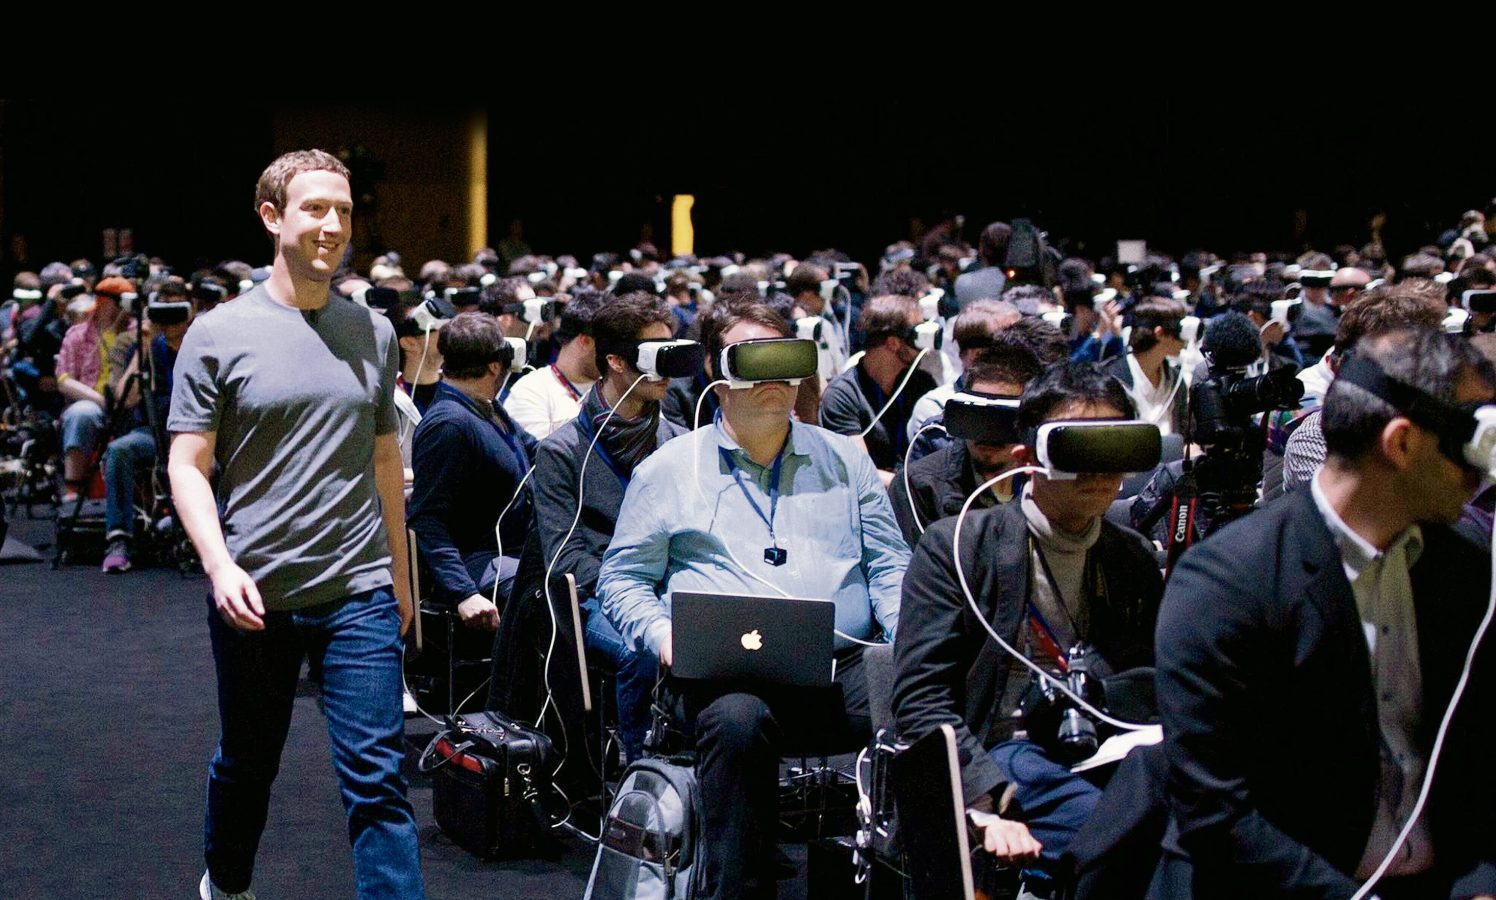 2016’daki bir basın lansmanında çekilen bu kare, Mark Zuckerberg’ün sanal evrenini hayal edenler için güzel bir özet.